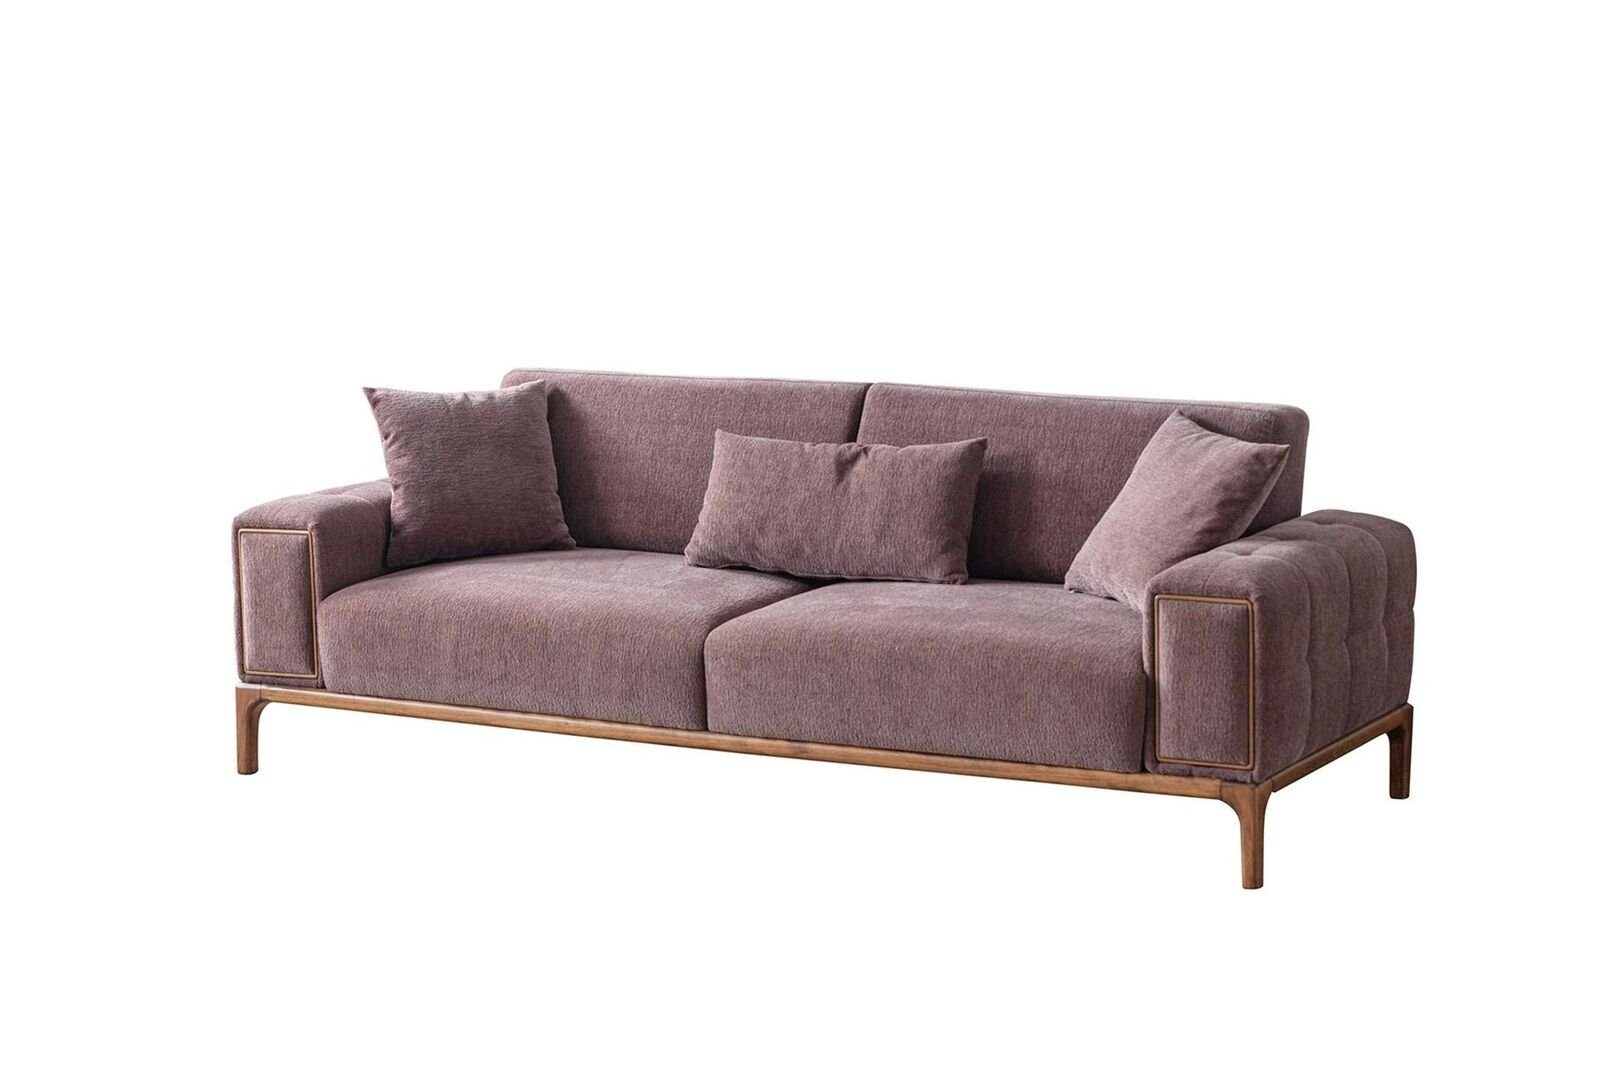 JVmoebel Europa Modernes 3-Sitzer Relax Sofa 3 Sofa 3er Wohnzimmer Teile, Sofa Sitzer 1 Luxus Couchen, Made in